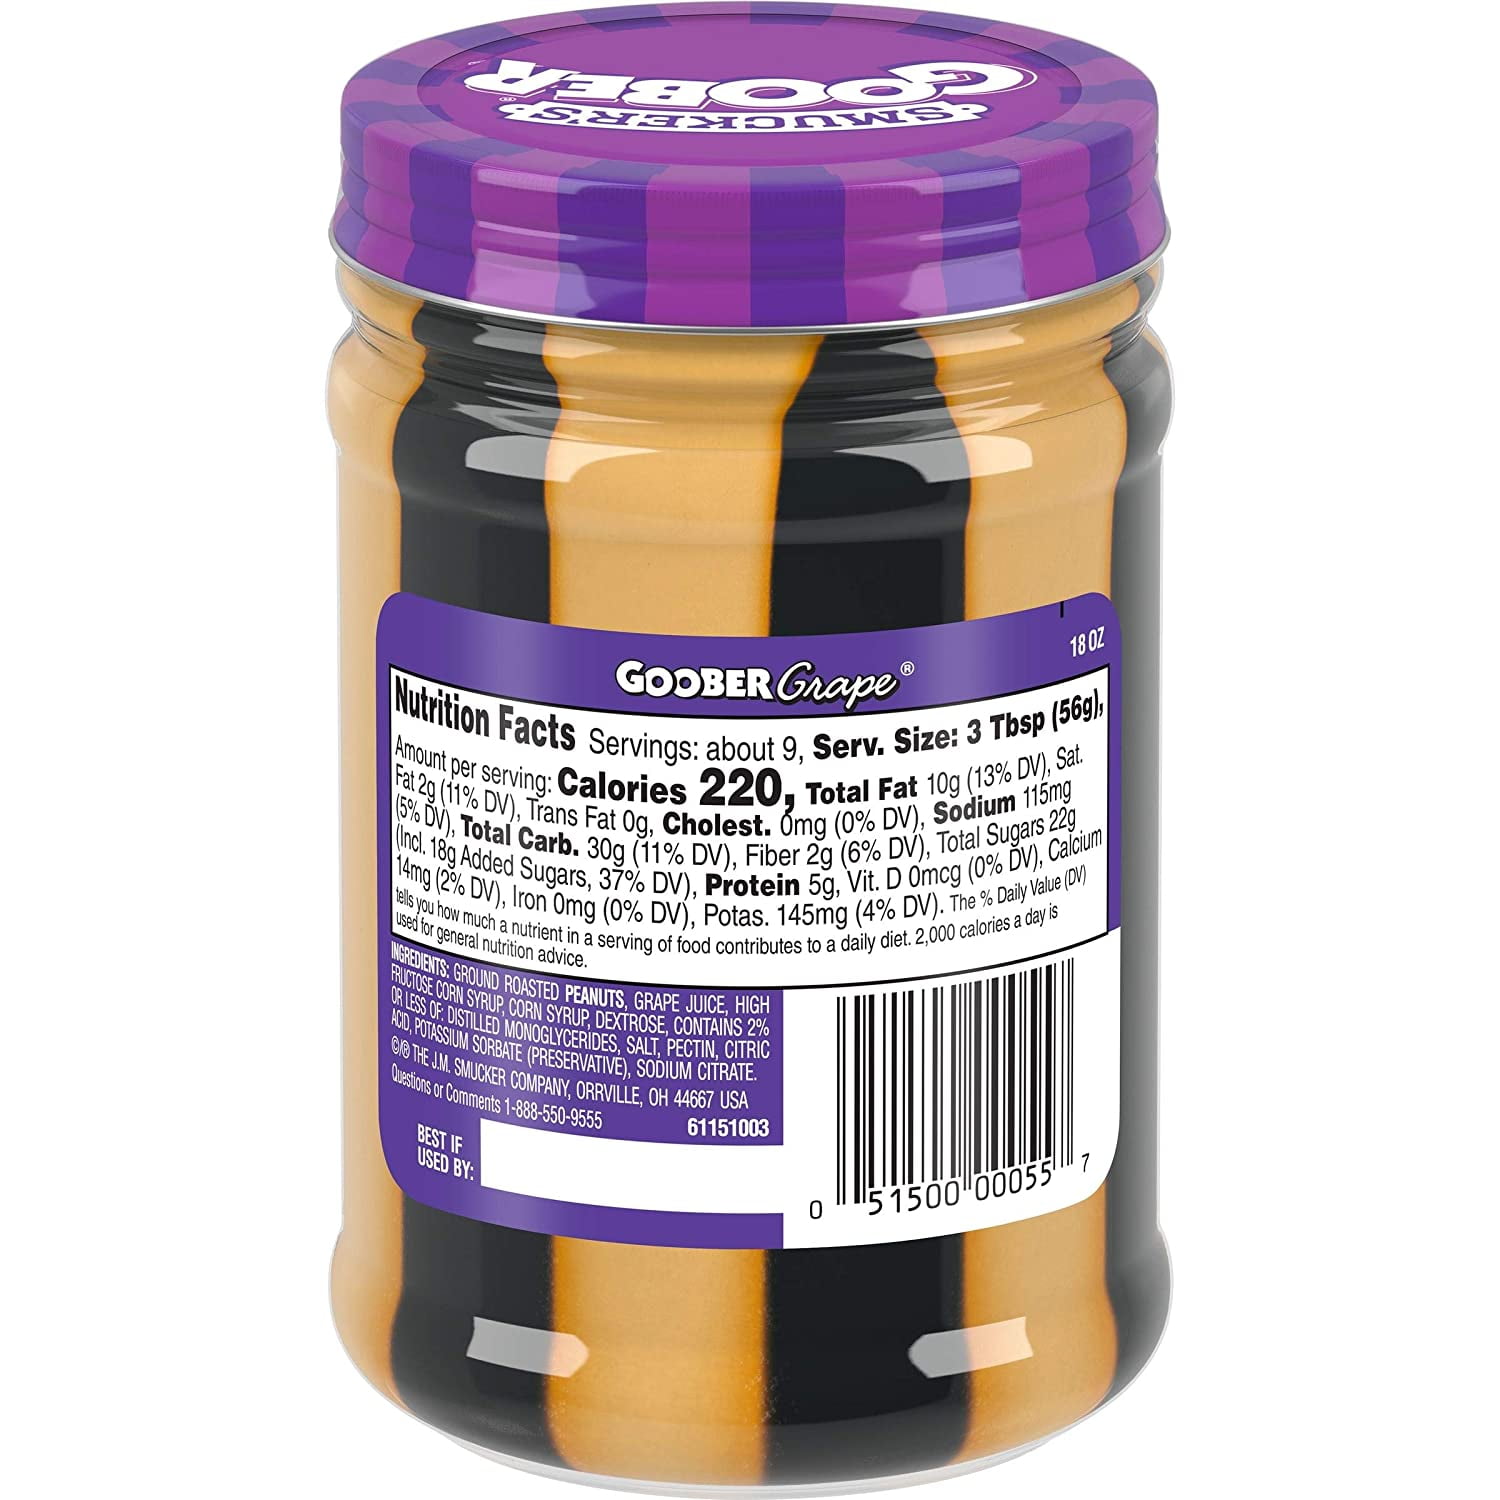 出色 Great Value Creamy Peanut Butter Grape Jelly Stripes Spread, 18 oz Pack  of